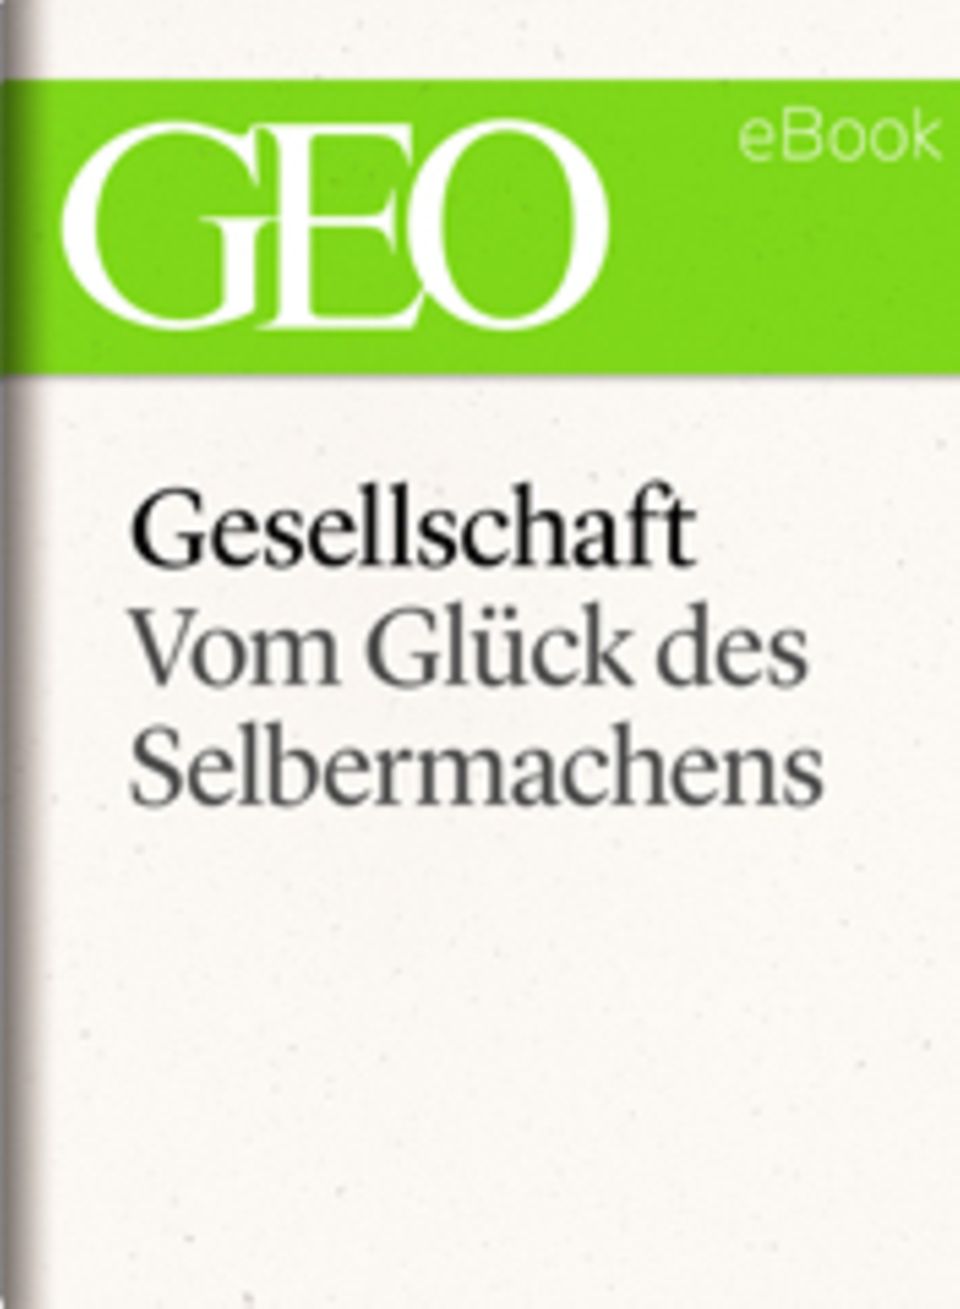 Vom Glück des Selbermachens: GEO eBook "Gesellschaft"